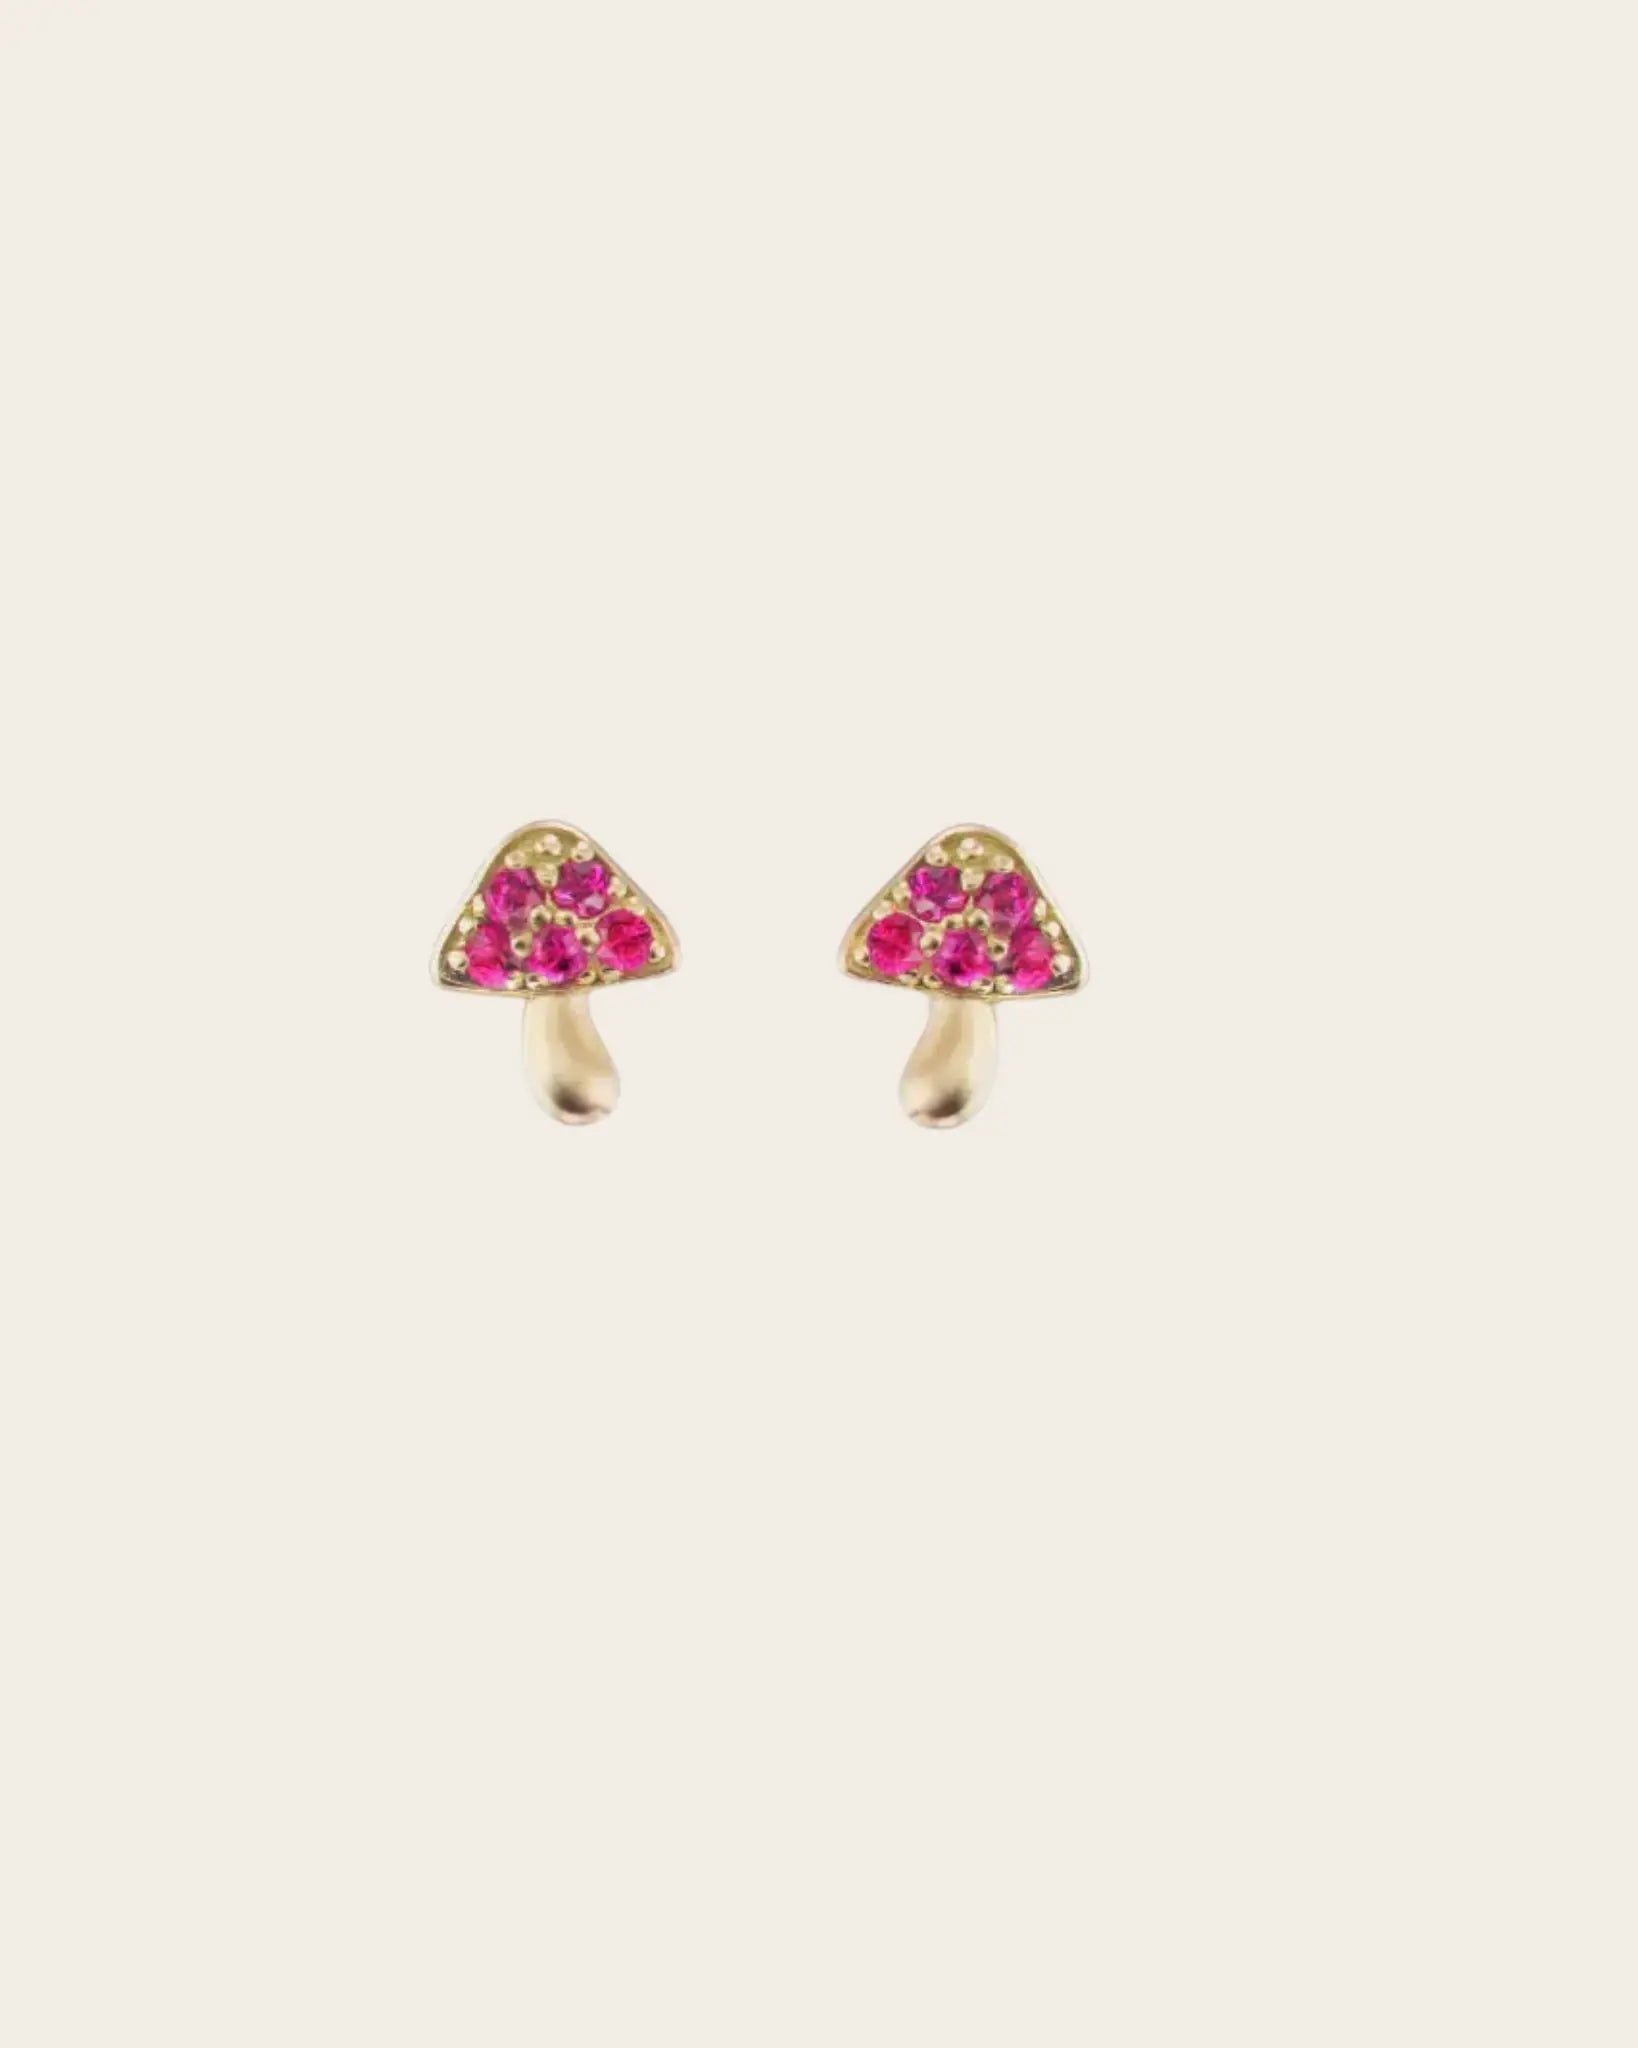 Brent Neale Micro Mushroom Ruby Stud Earrings Brent Neale Micro Mushroom Ruby Stud Earrings Brent Neale Brent Neale  Squash Blossom Vail